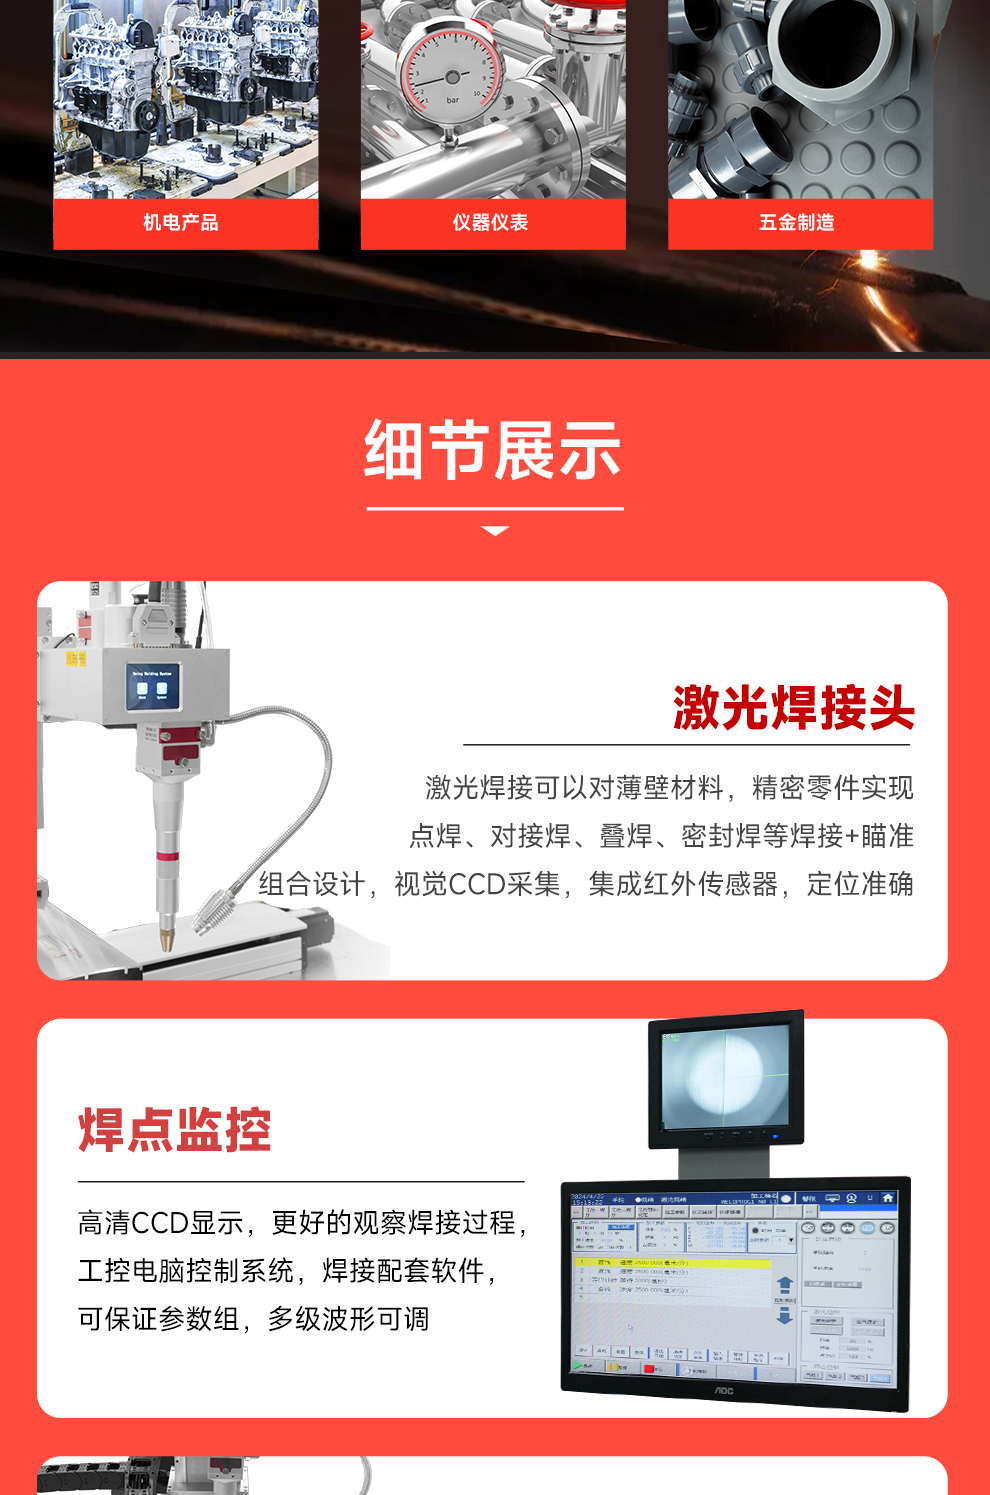 【待审】内贸-平台自动激光焊接机--详情O0520牛力_06.jpg